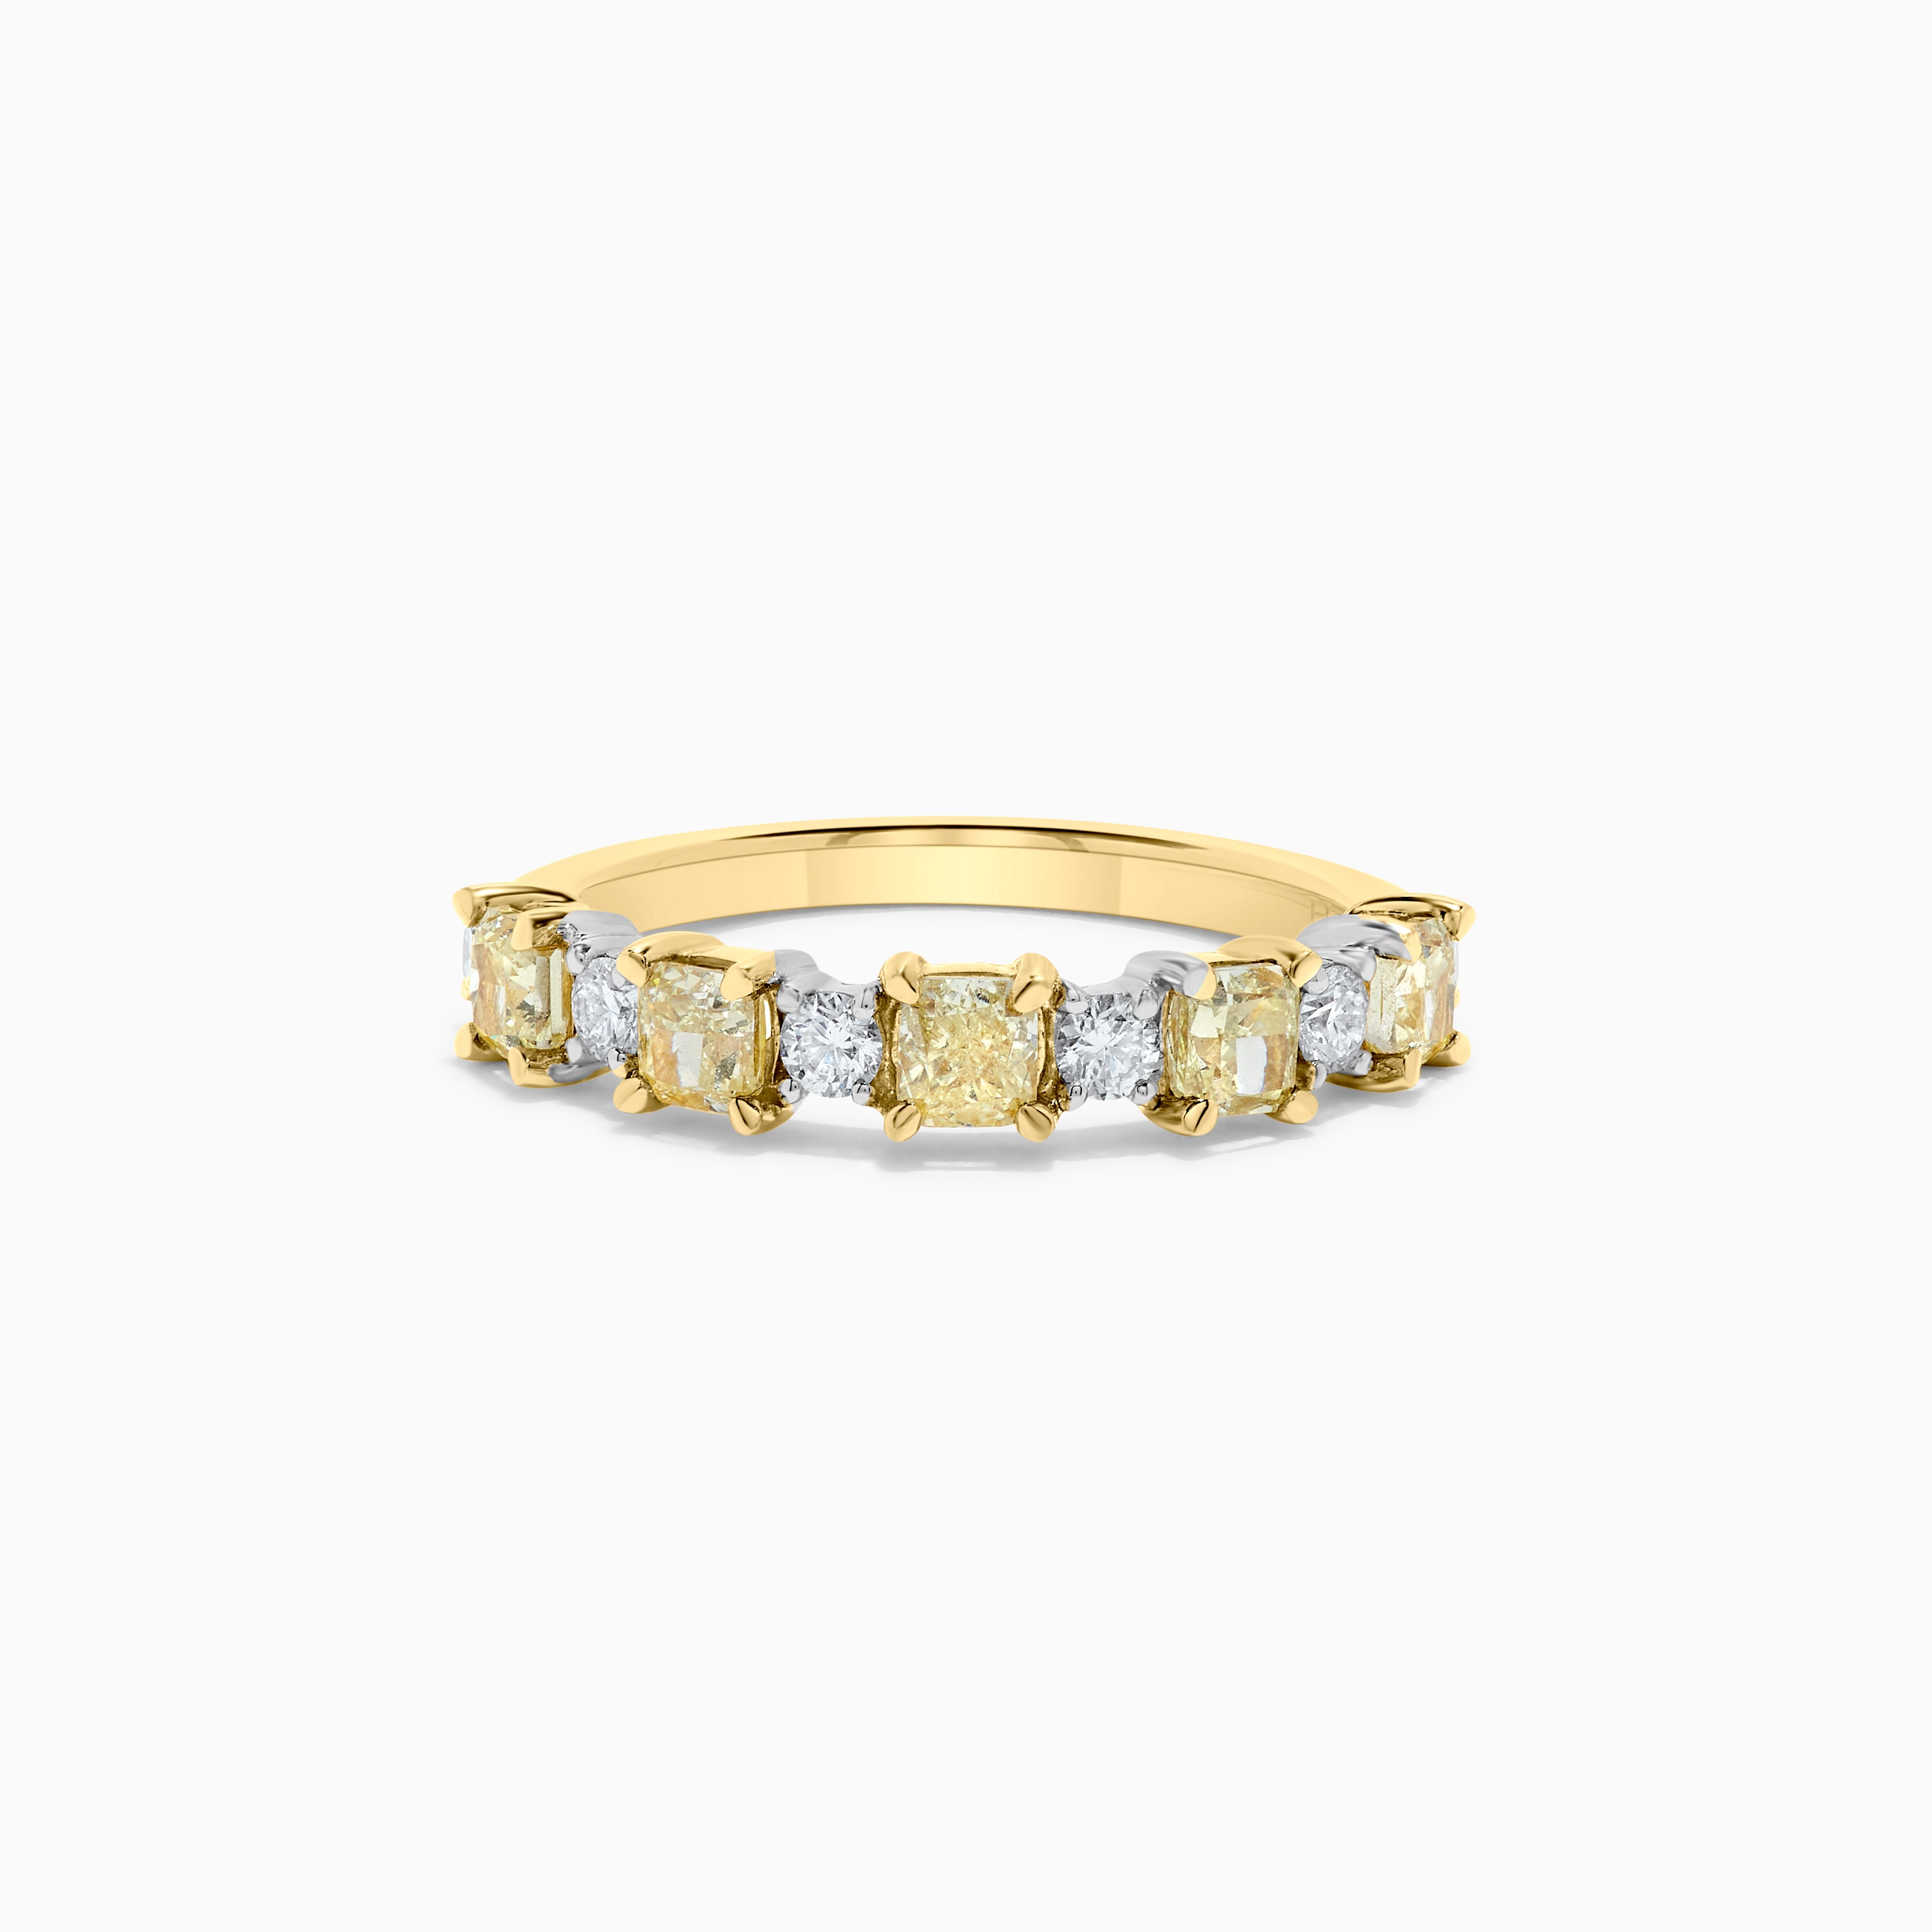 Alliance en or jaune radiant naturel et diamant blanc de 1.26 carats poids total